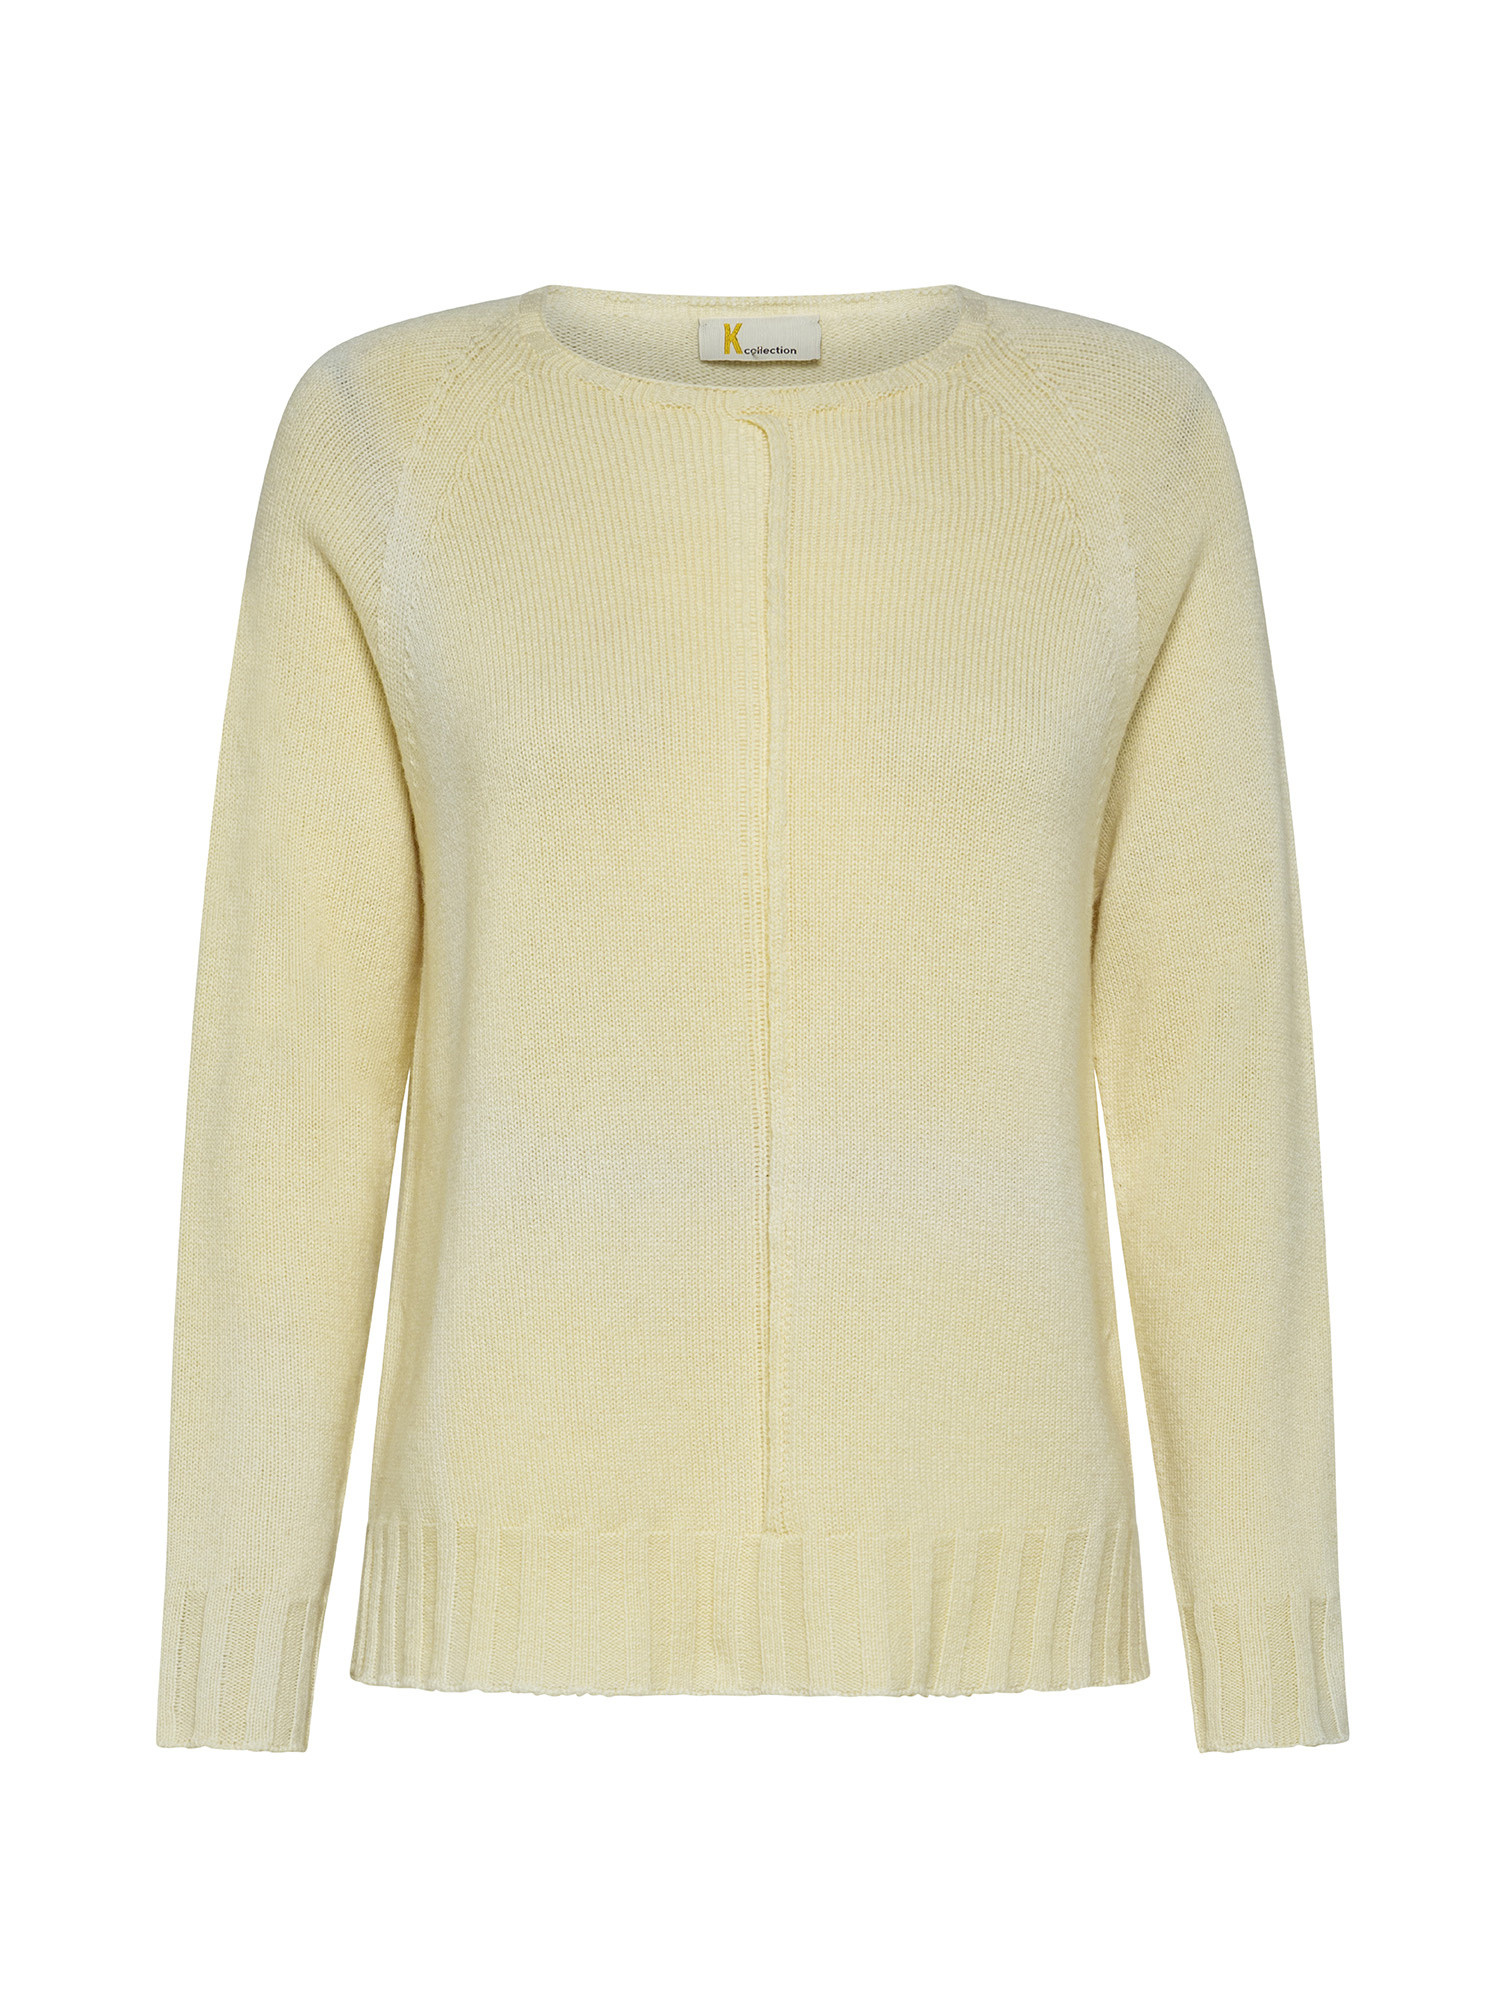 K Collection - Crewneck pullover, Ecru, large image number 0